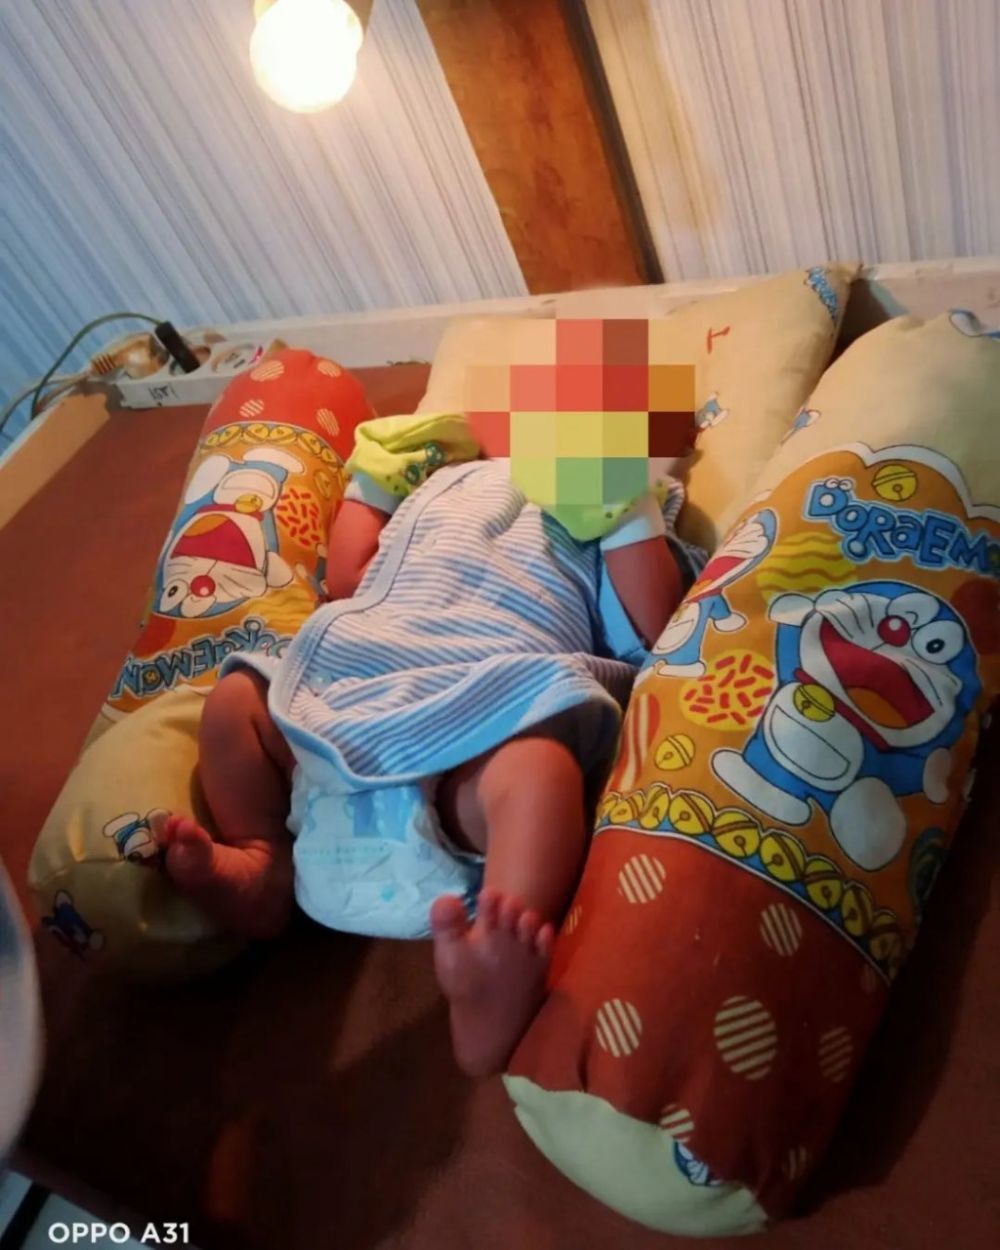 Bayi Ditemukan dalam Kantong Plastik, Ari-ari Masih Menempel